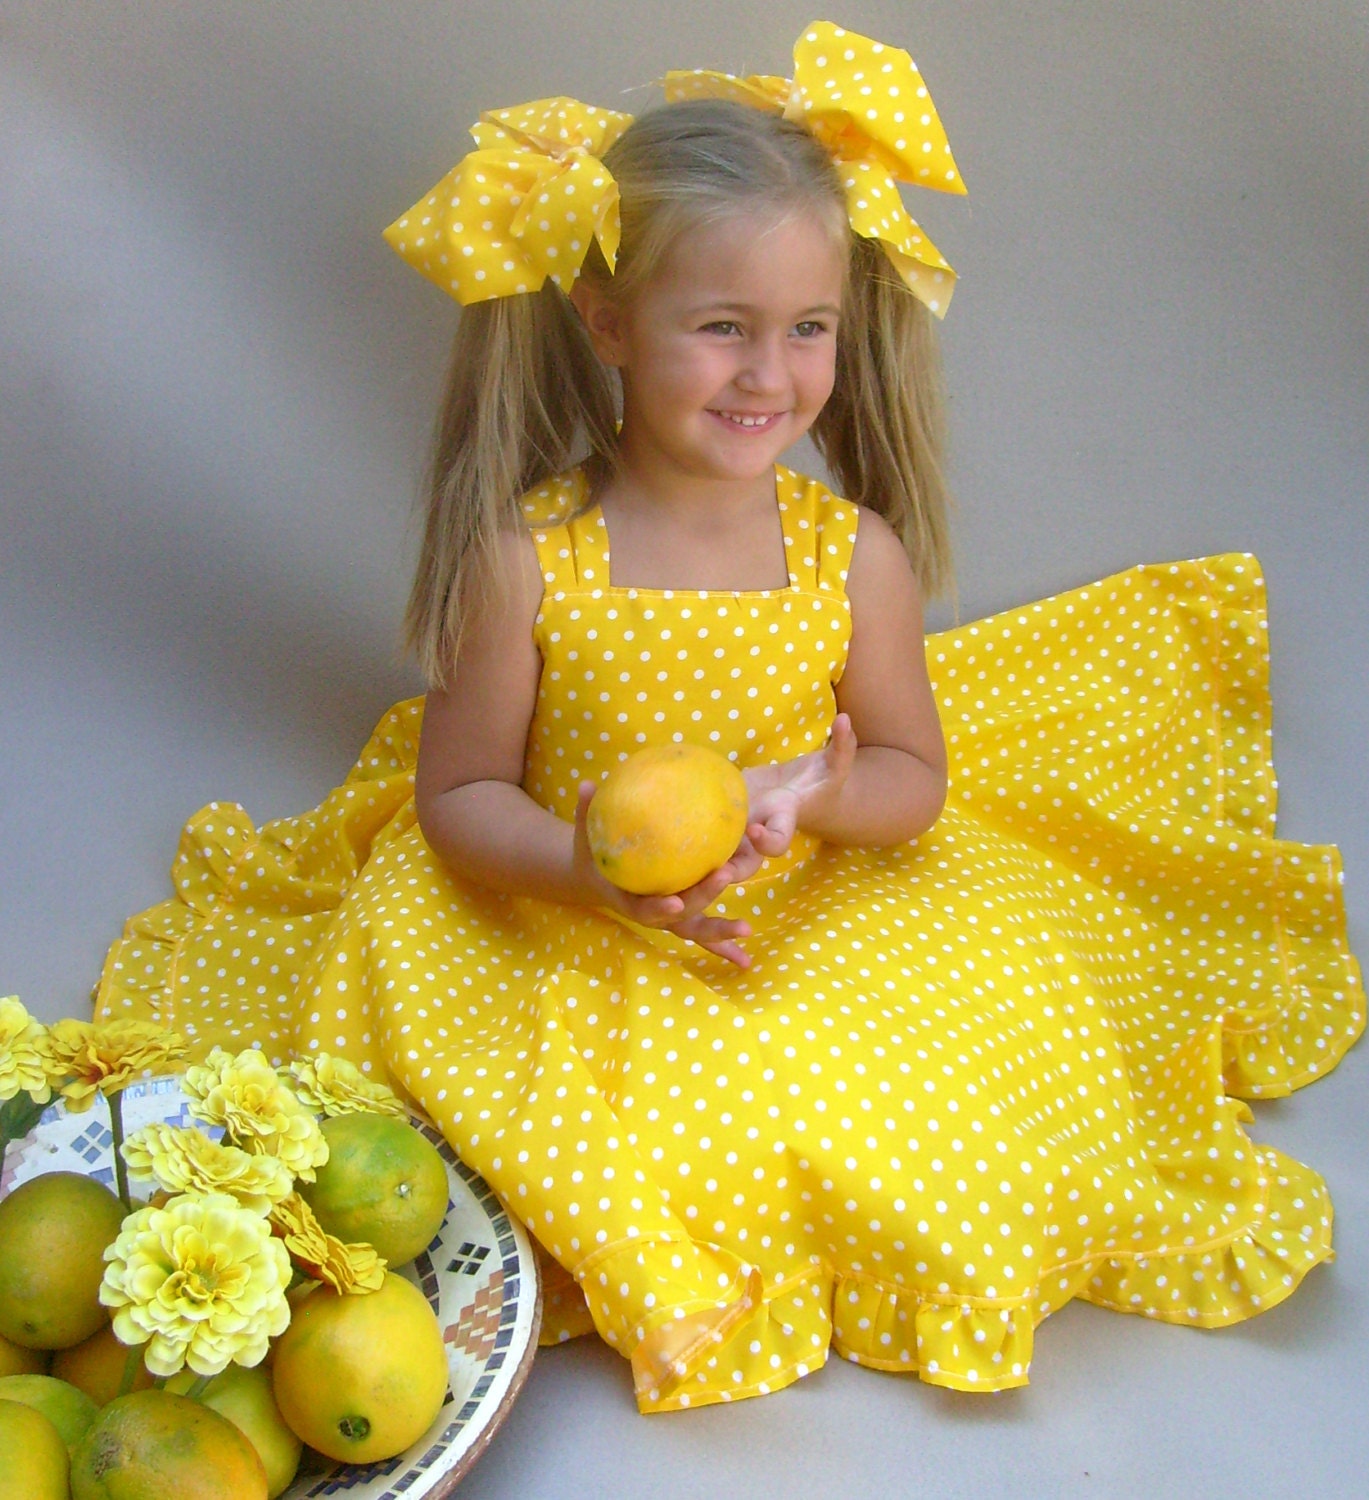 Нарядные платьица желтые брошки не пятнышка нет. Желтое платье для девочки. Маленькая девочка в желтом платье. Ребенок в желтом платье. Дквочки в жёлтом платье.